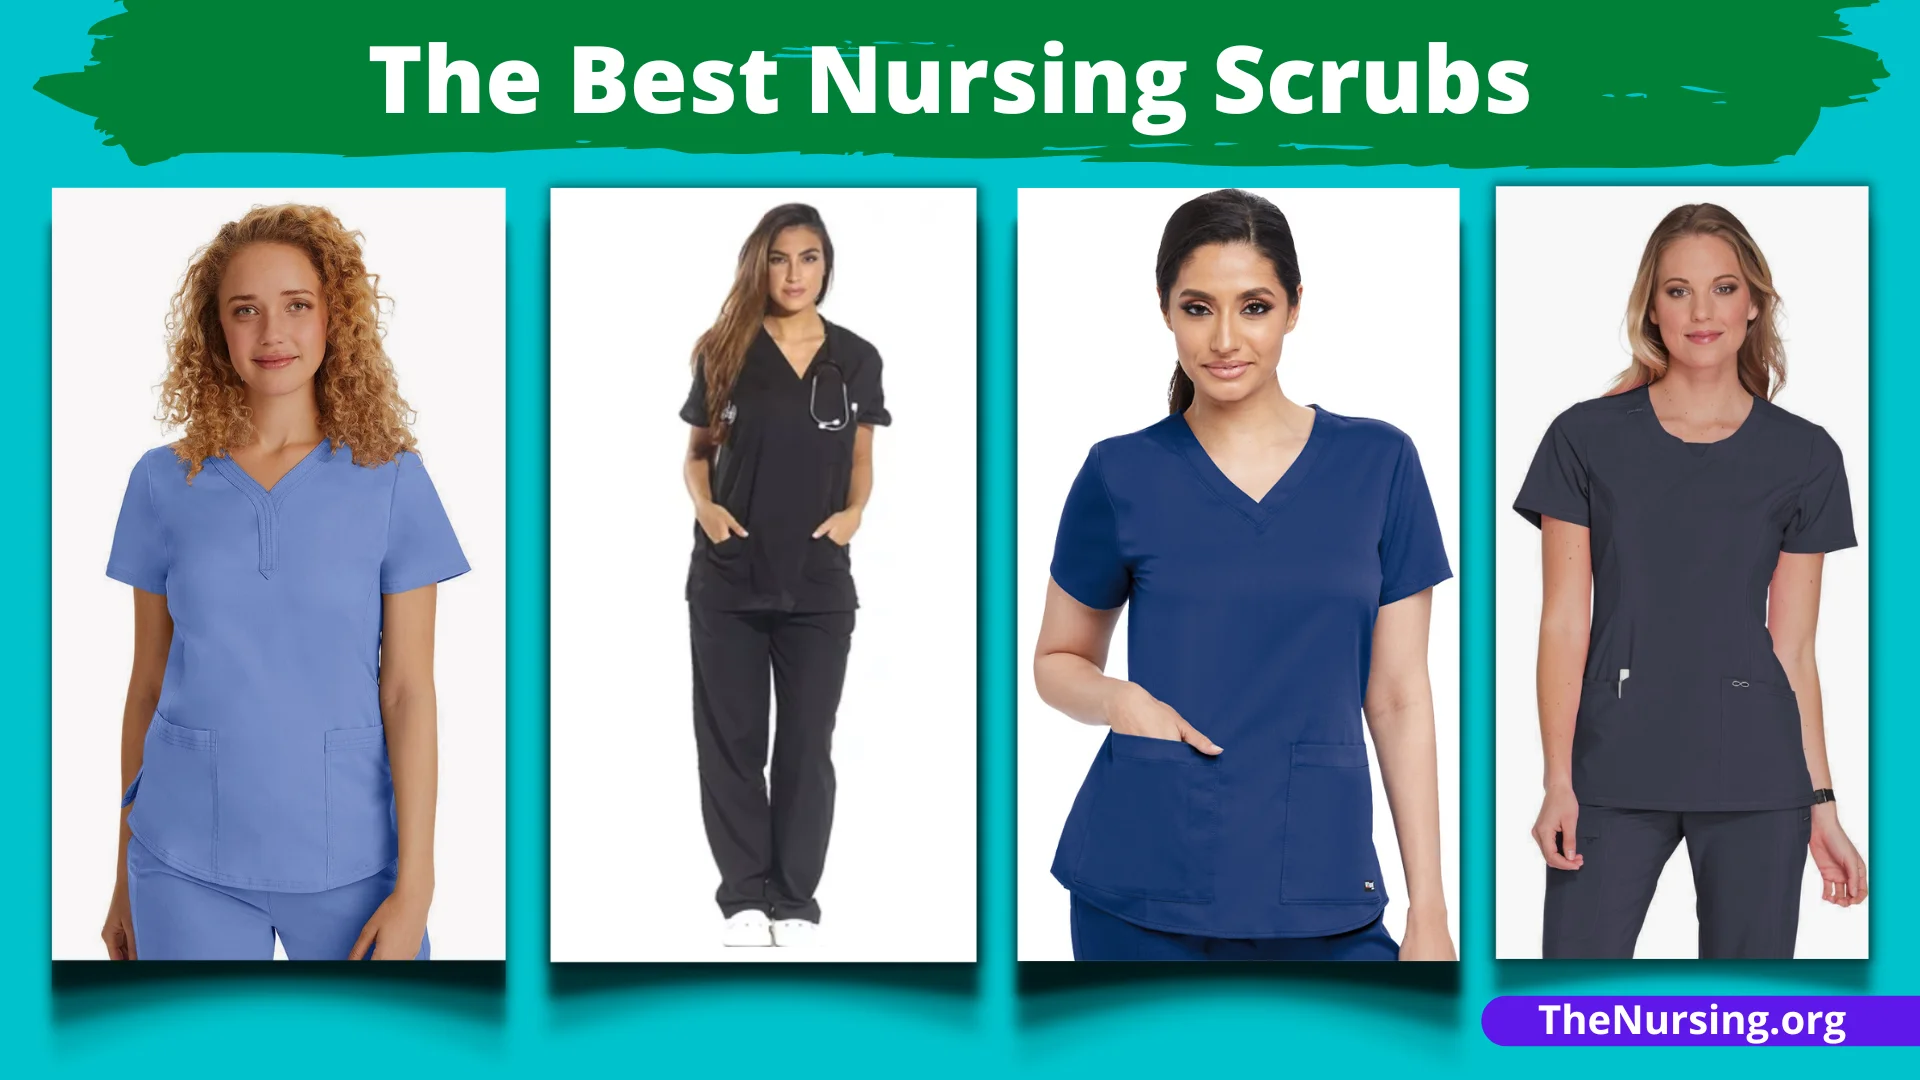 Best Scrubs for Nurses